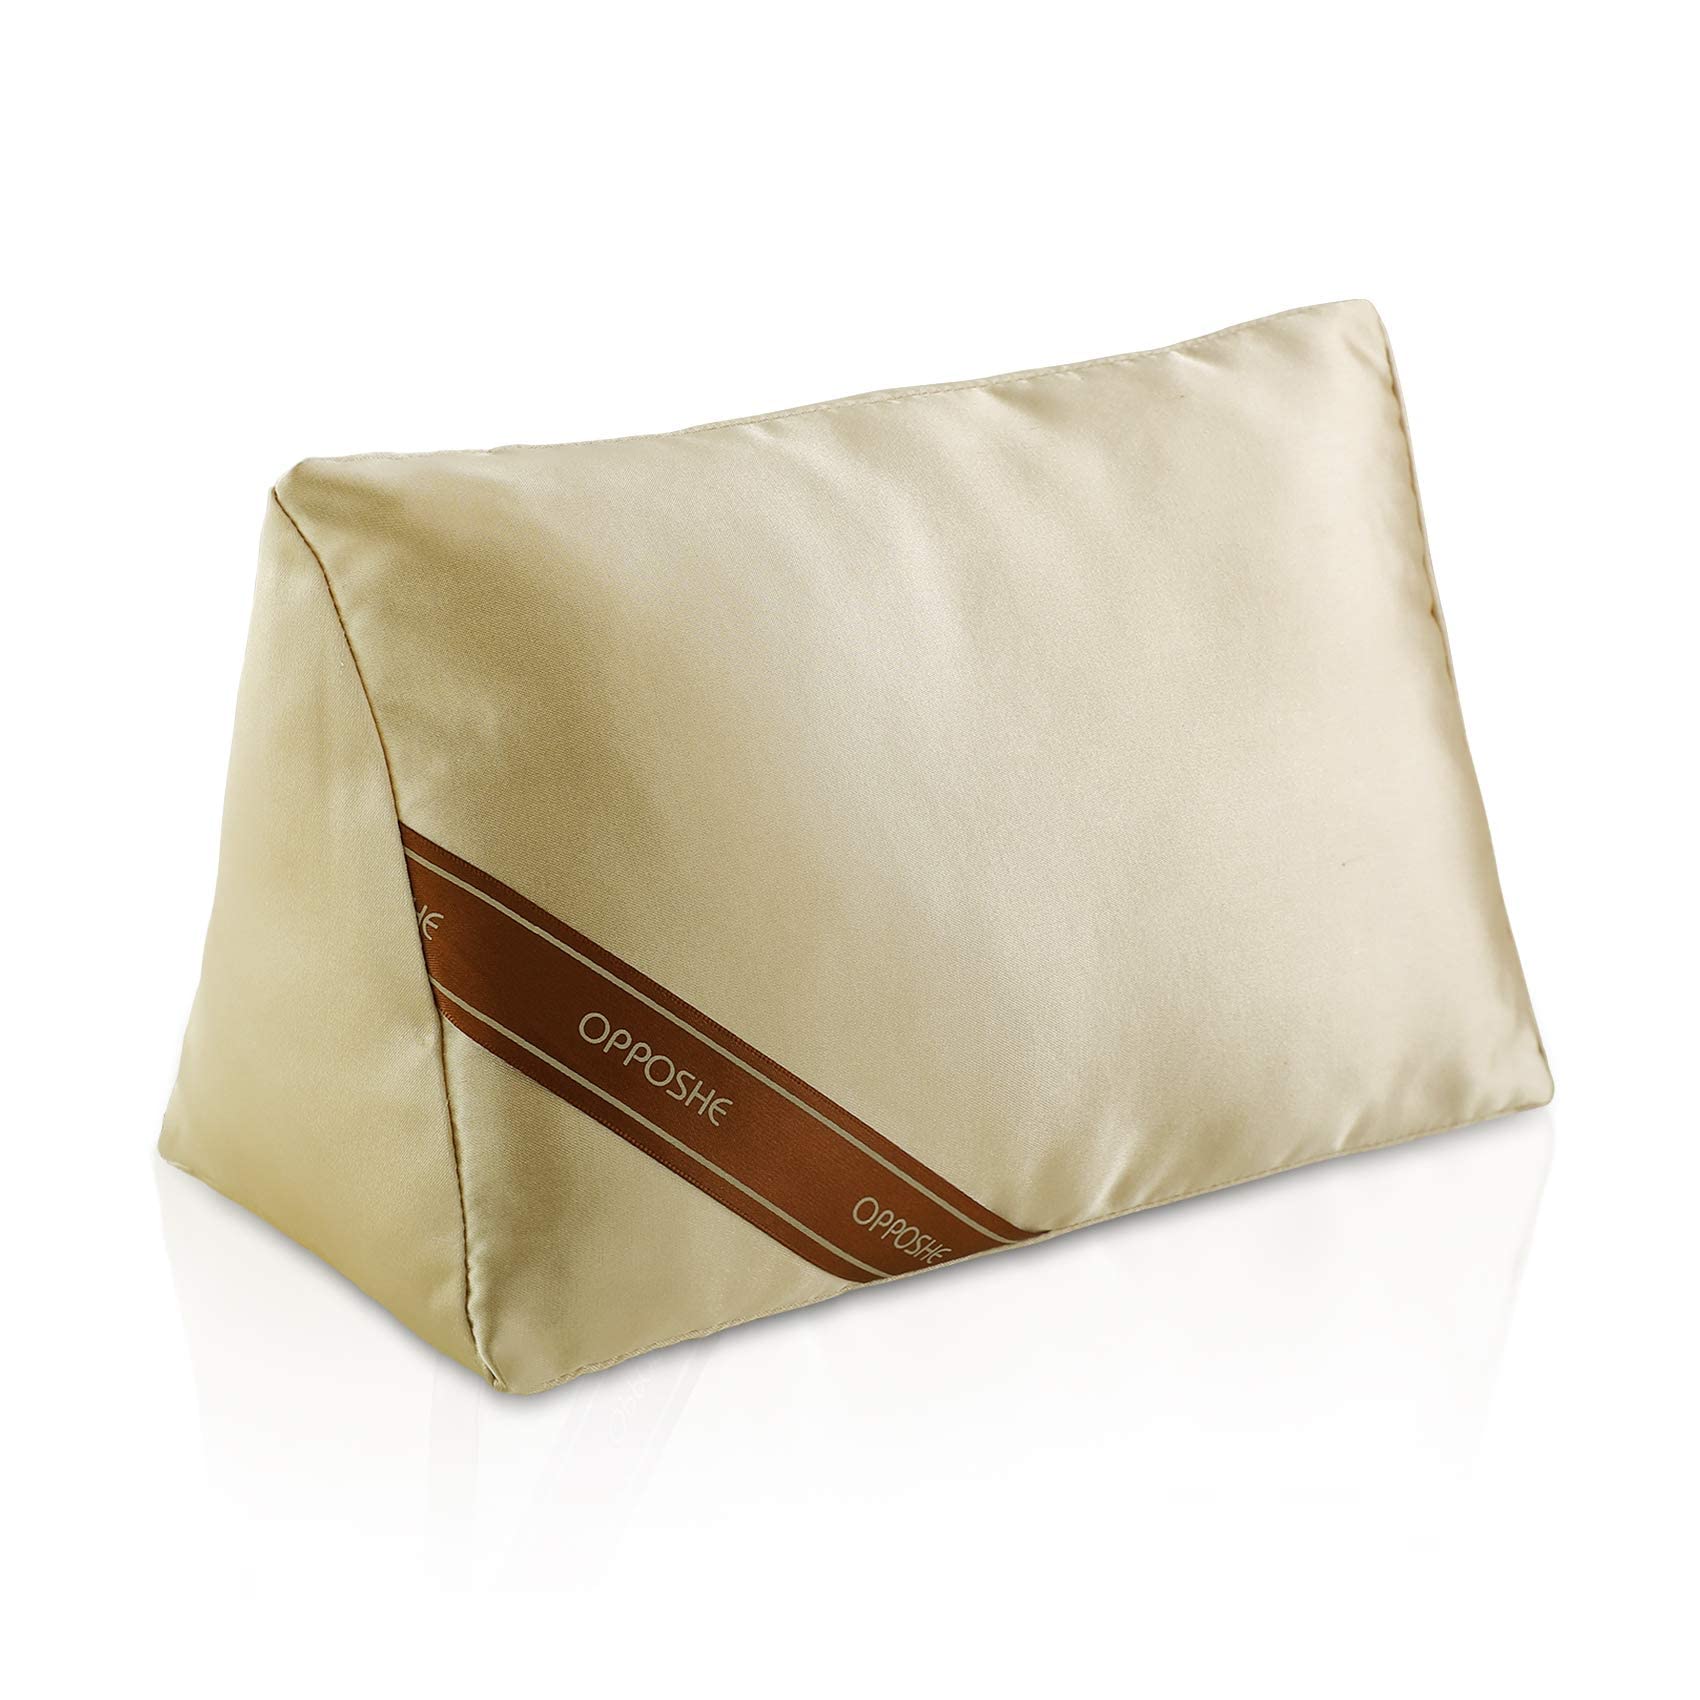 Satin Pillow Luxury Bag Shaper For Hermes Birkin 25, Birkin 30 and Birkin  35.